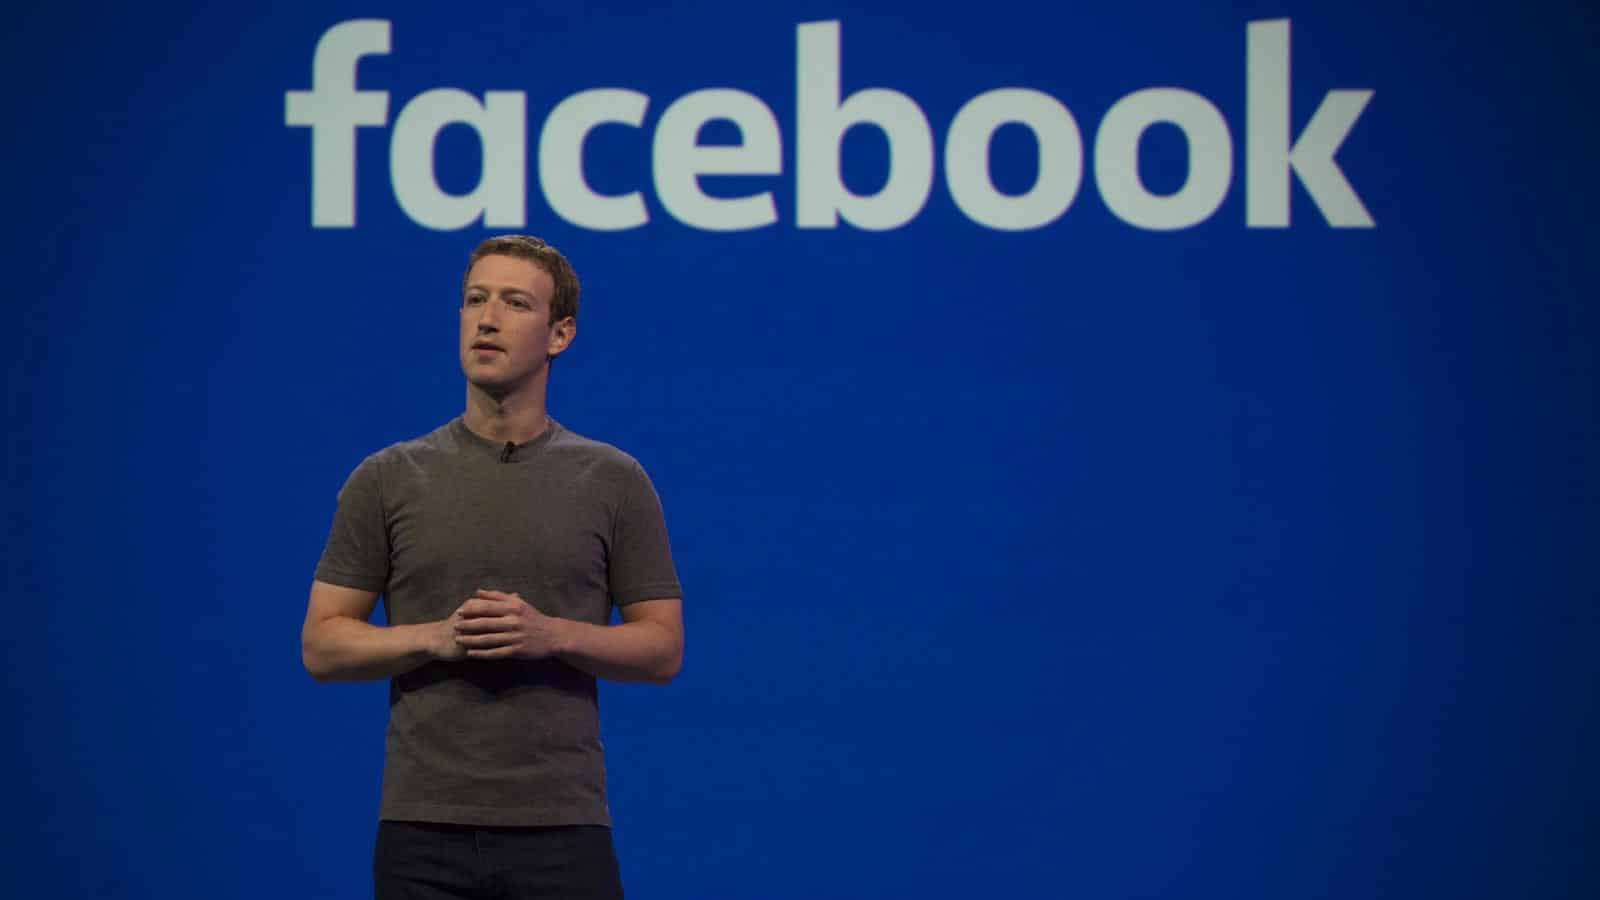 مشاكل فيسبوك تفقد مارك زوكربيرج 31 مليار دولار